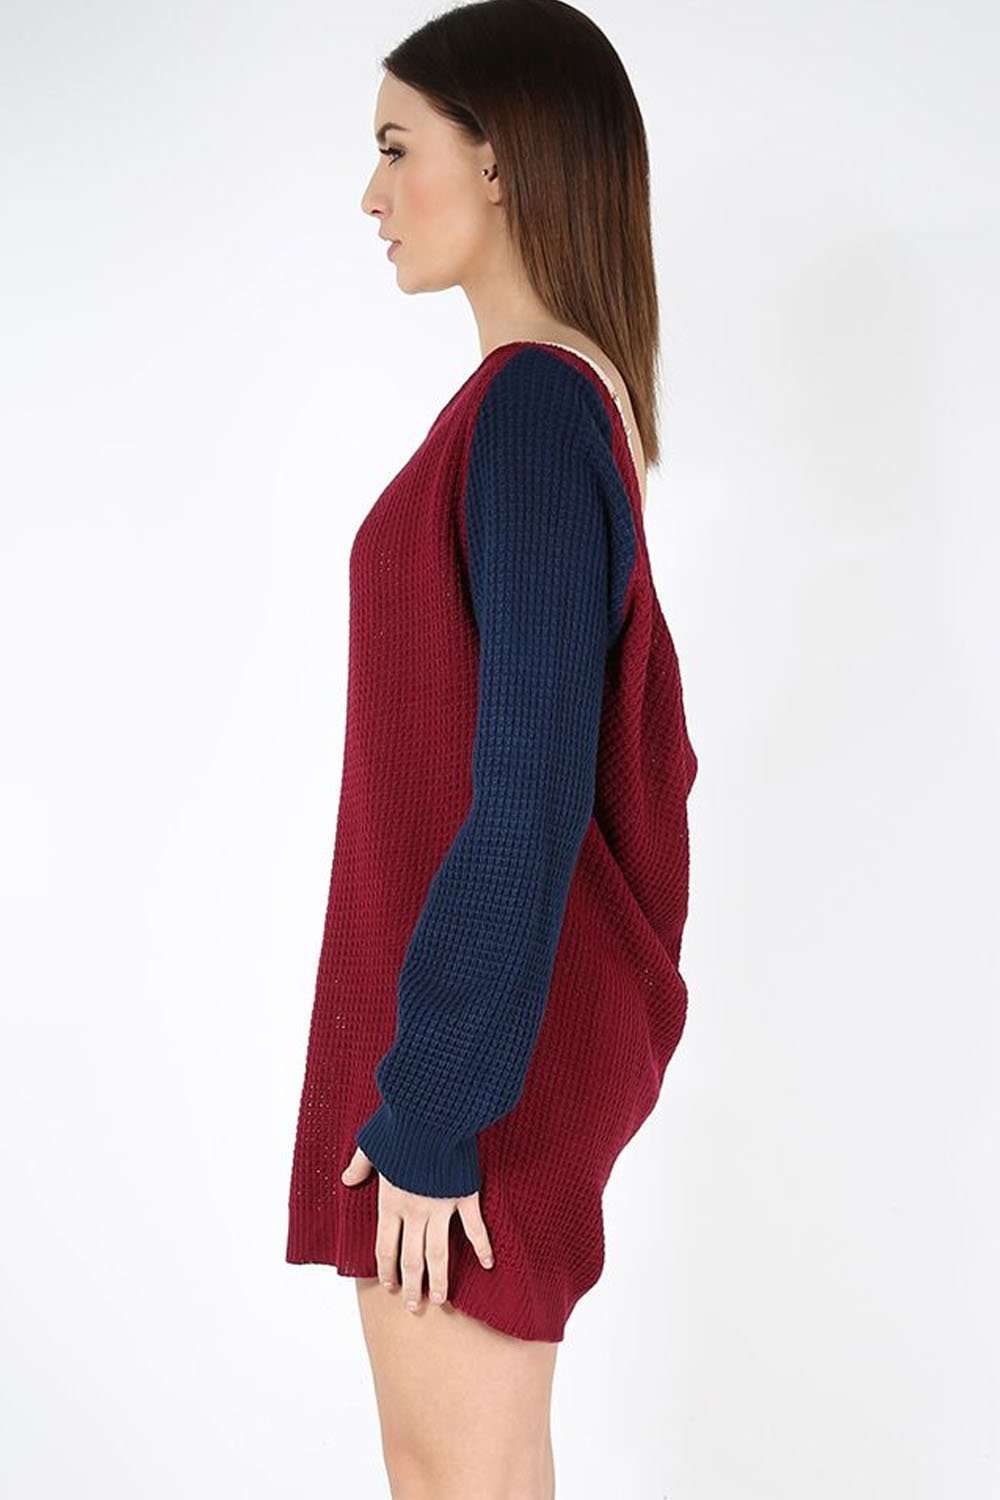 Hettie Monochrome Knitted Jumper Dress - bejealous-com